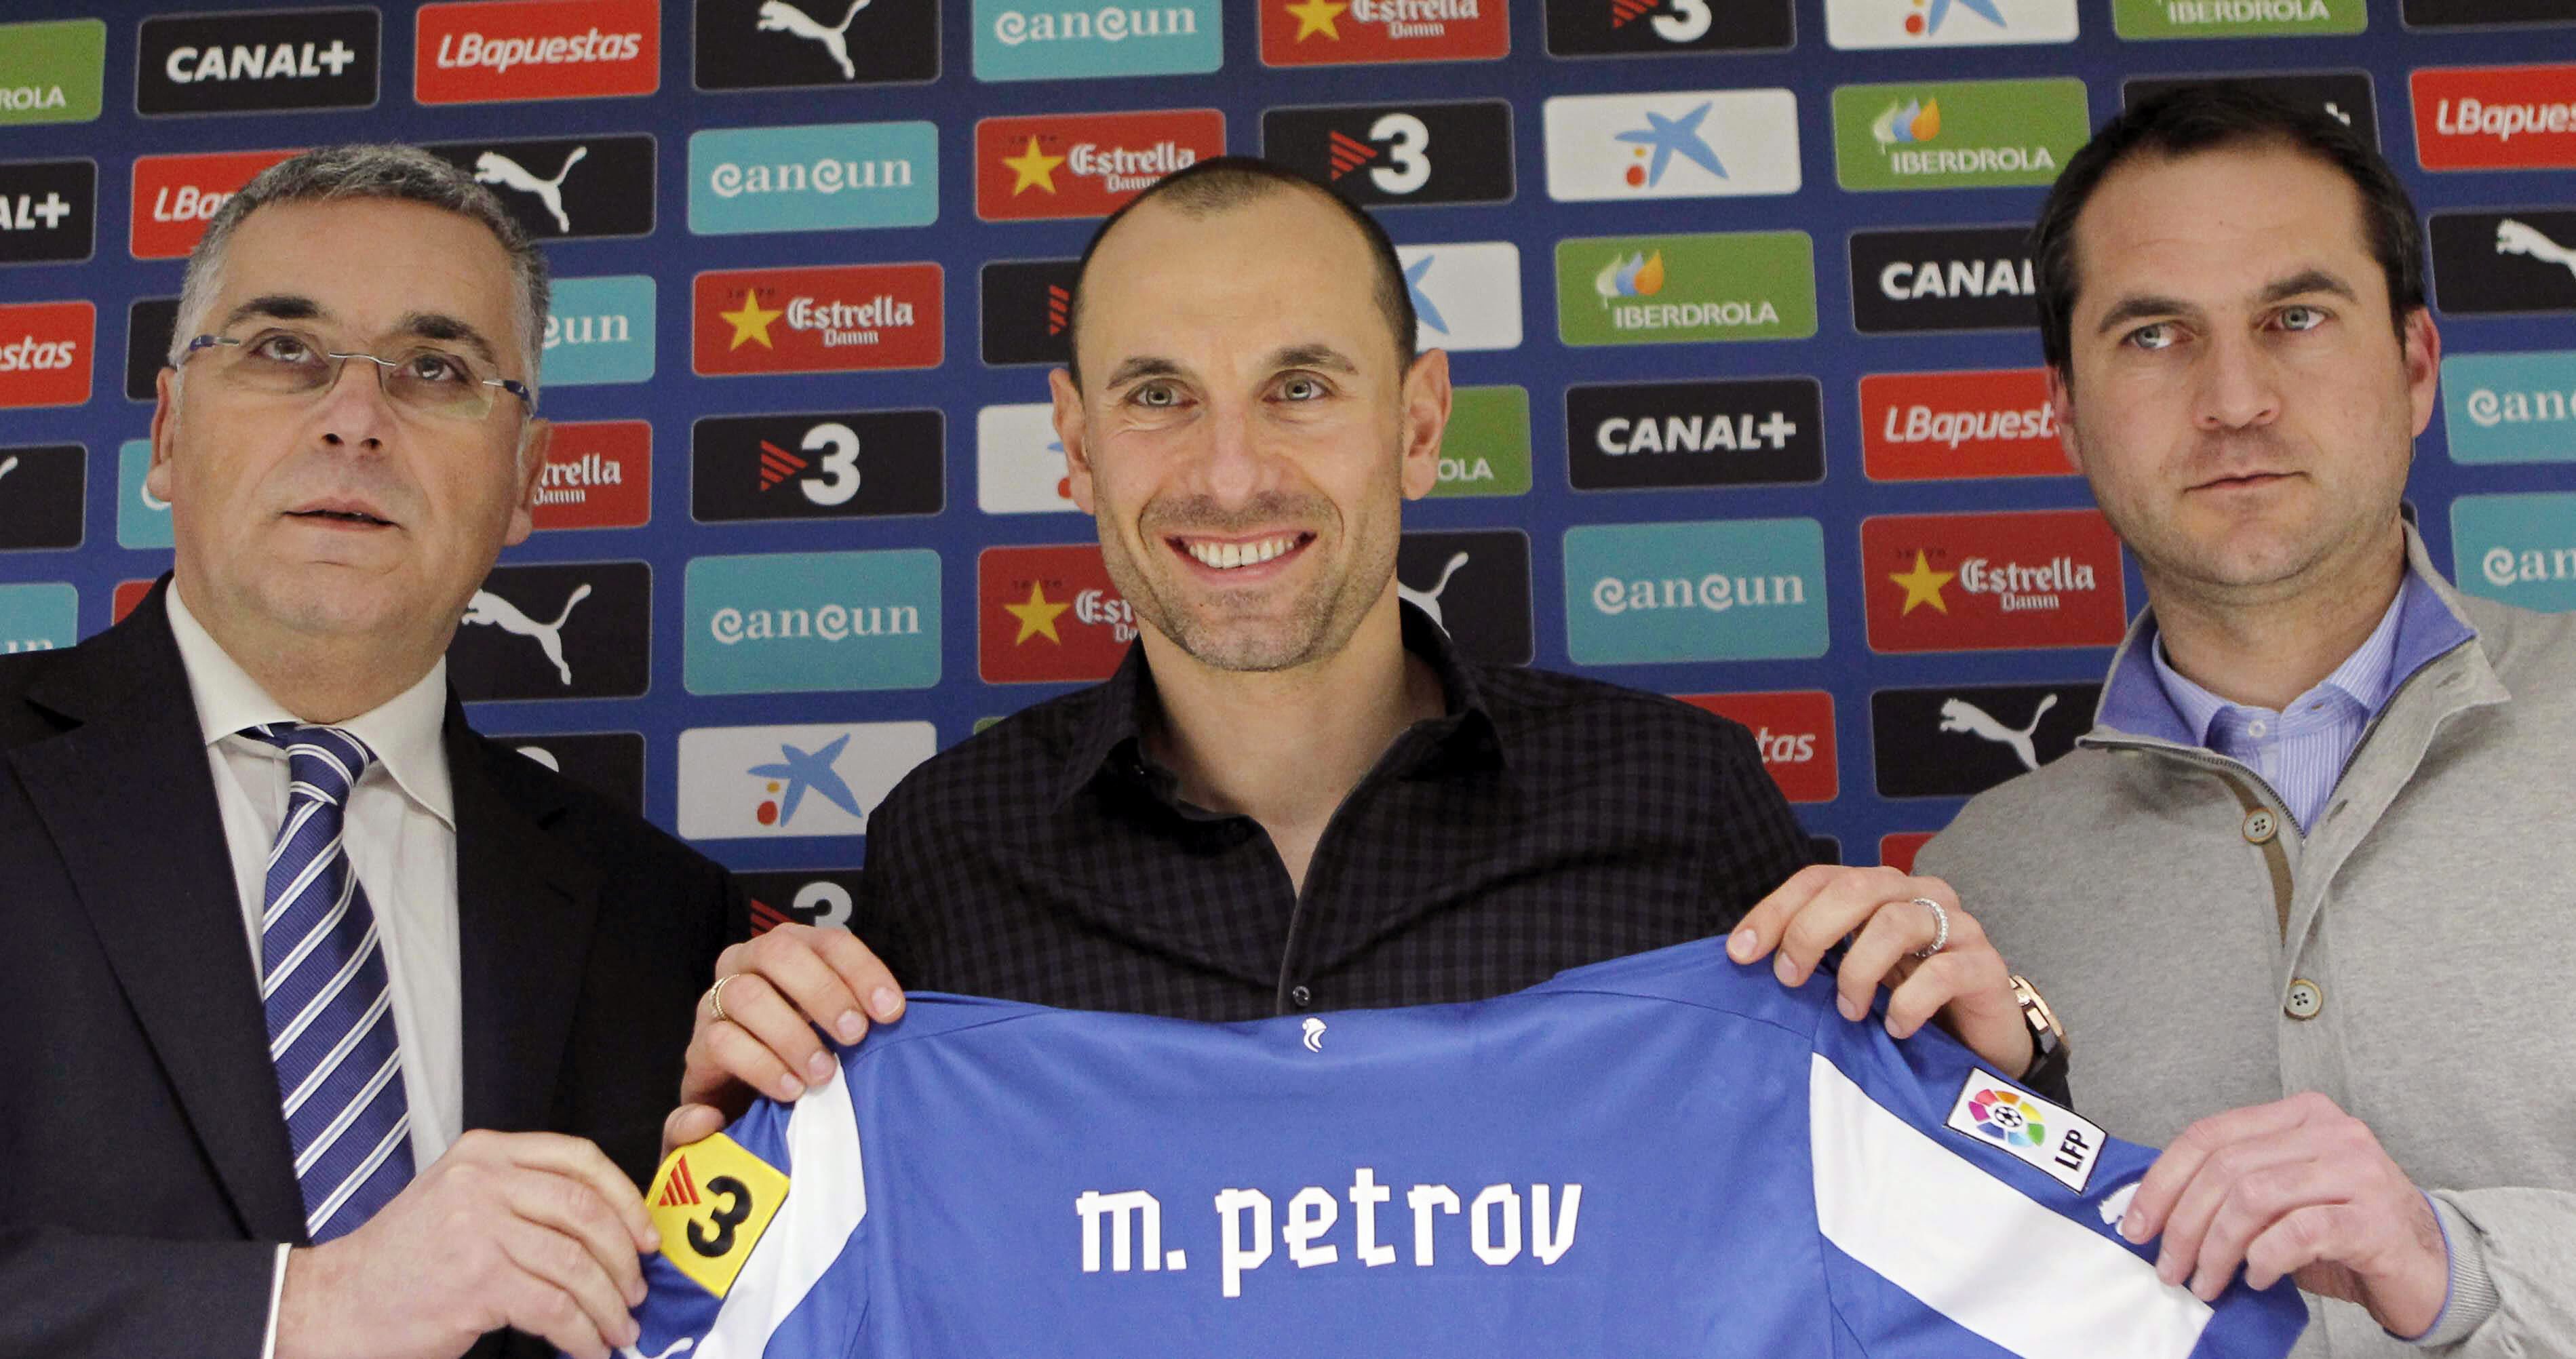 Мартин Петров: Искам да играя в повече мачове